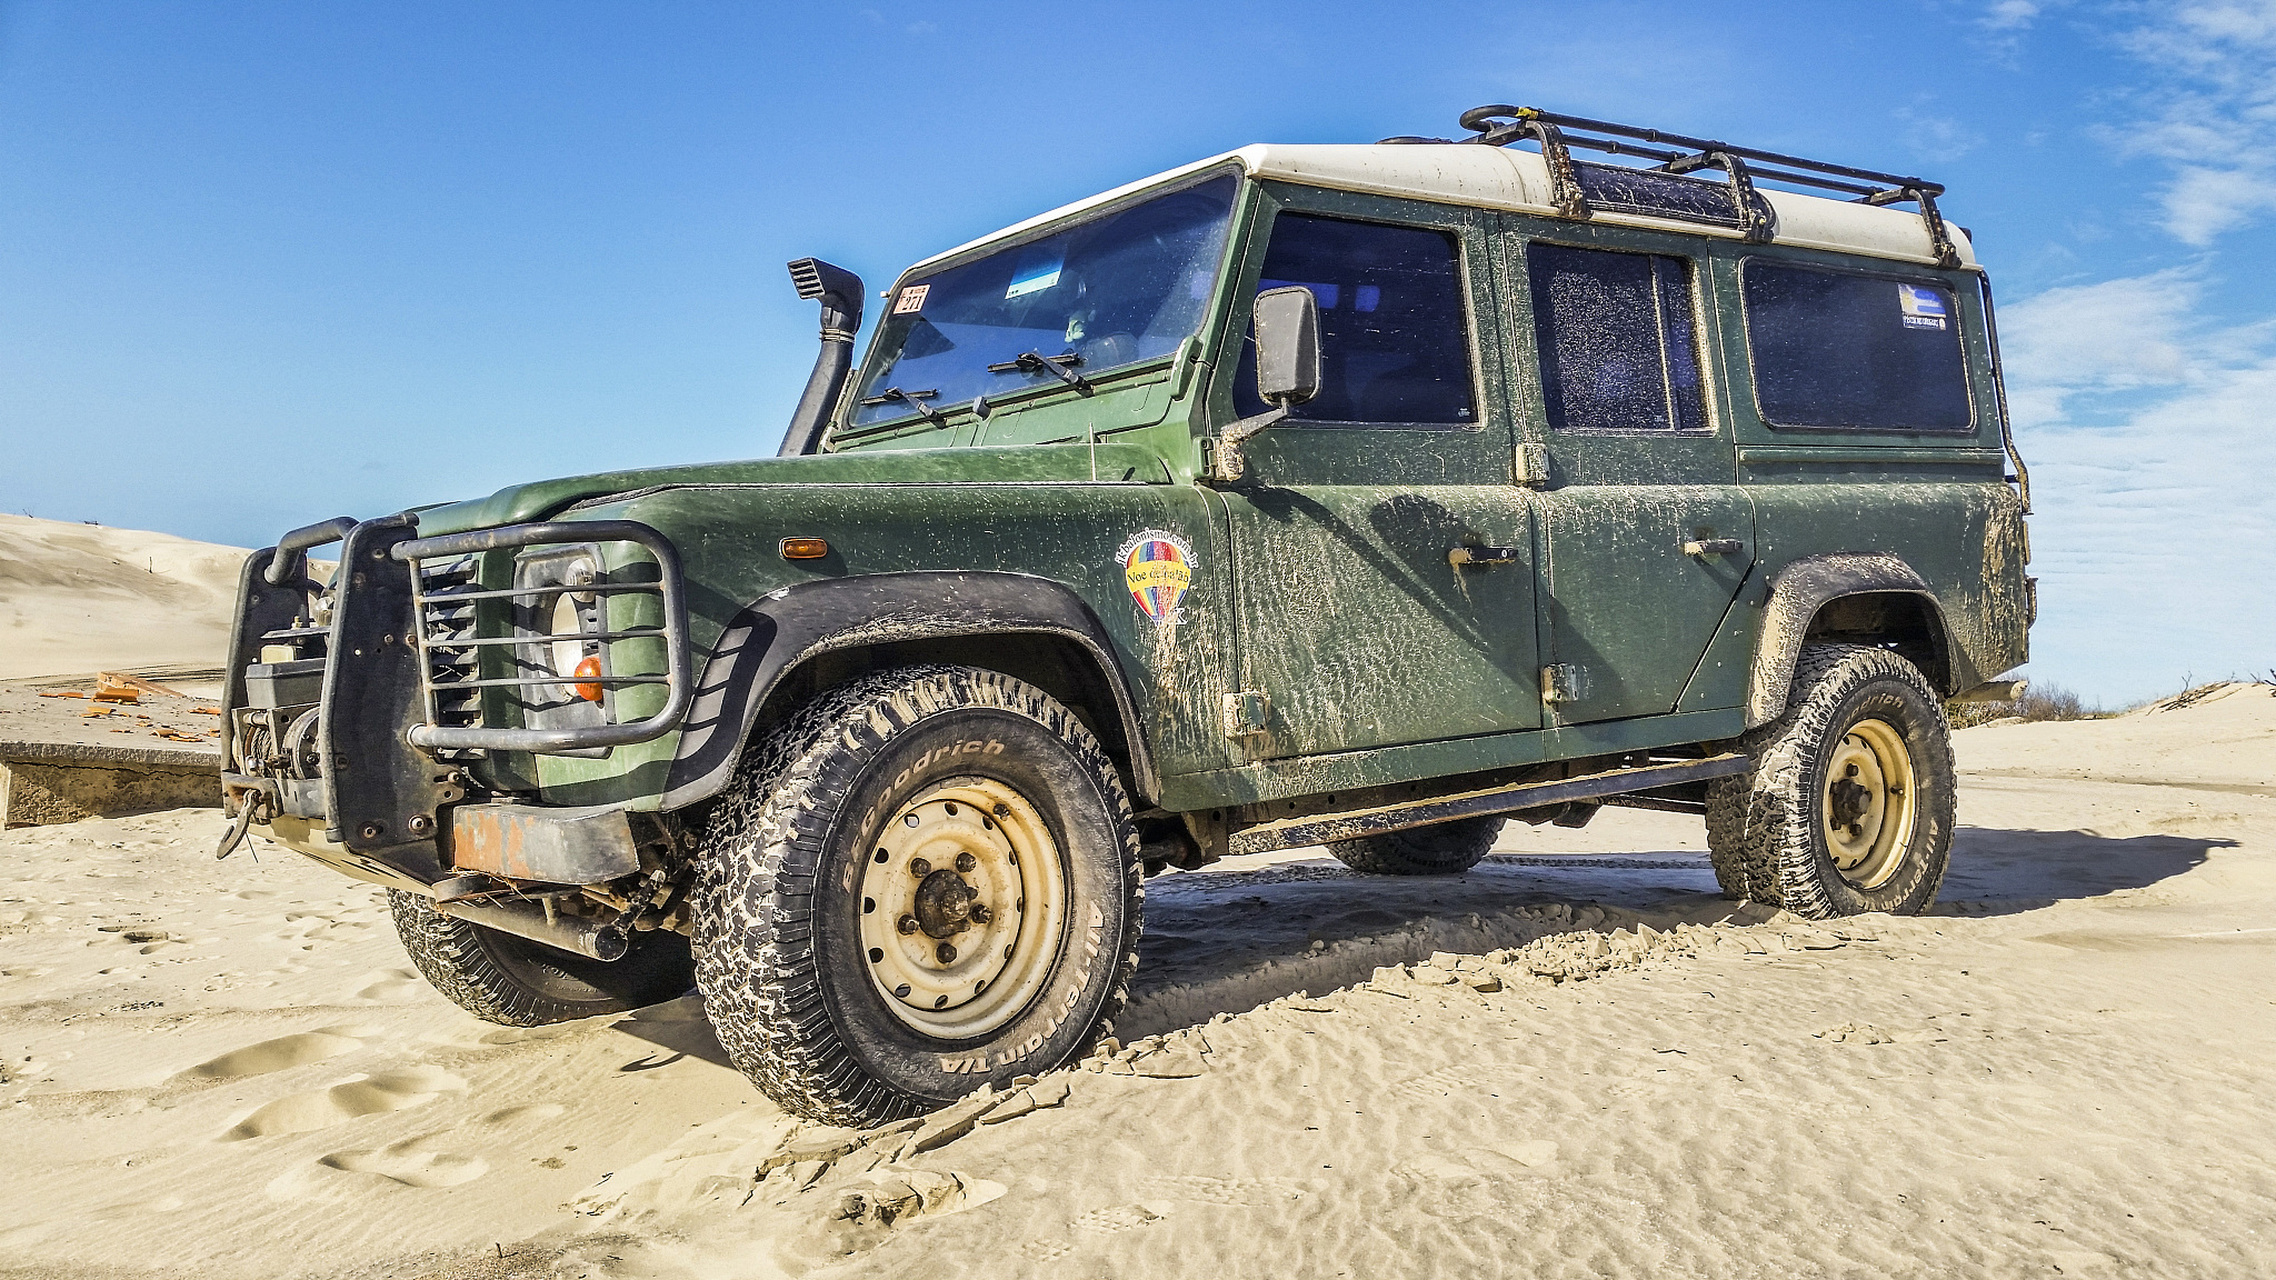 jeep品牌源自二战时期军用车辆,以越野性能和可靠性著称